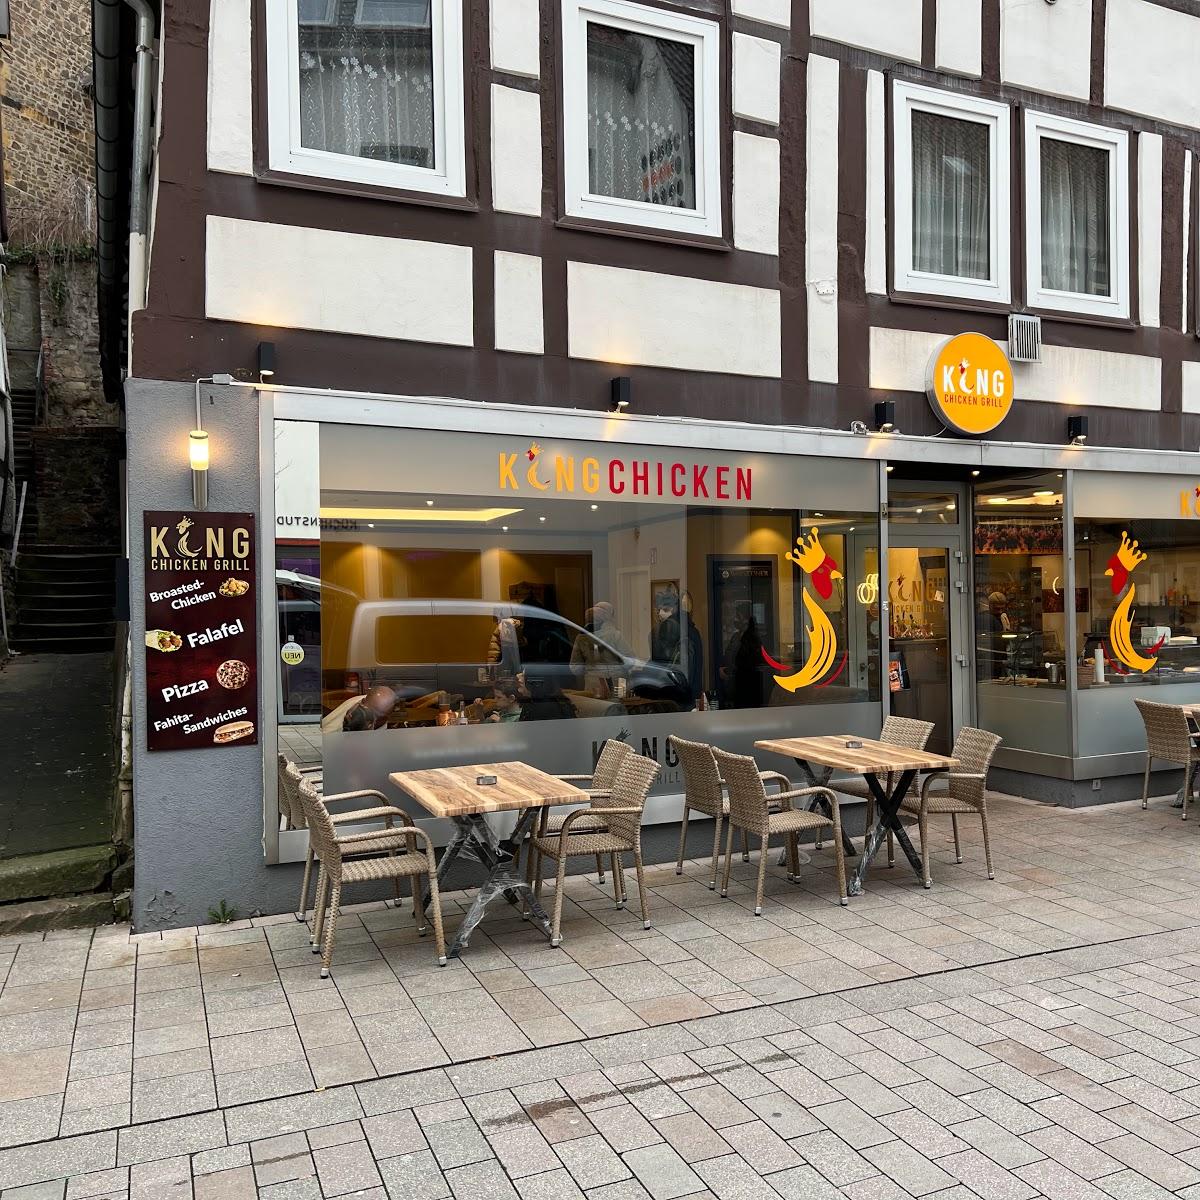 Restaurant "King Chicken Grill" in Bad Salzuflen